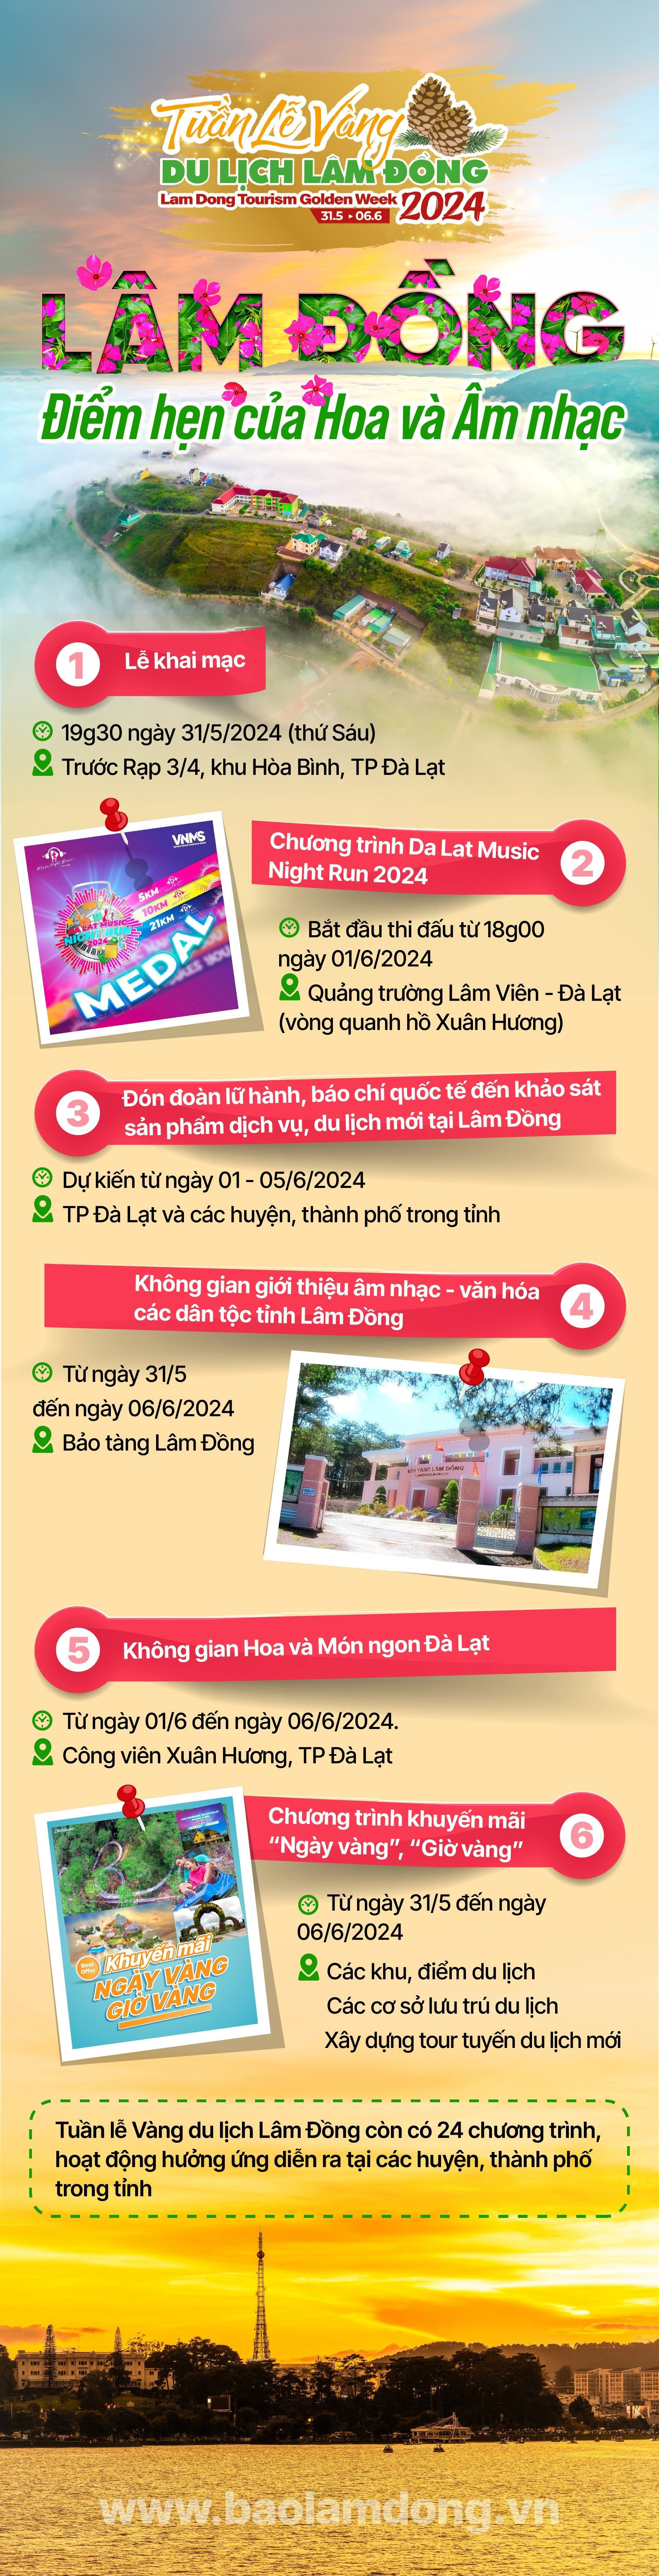 Nhiều sự kiện hấp dẫn tại Tuần lễ Vàng du lịch Lâm Đồng 2024